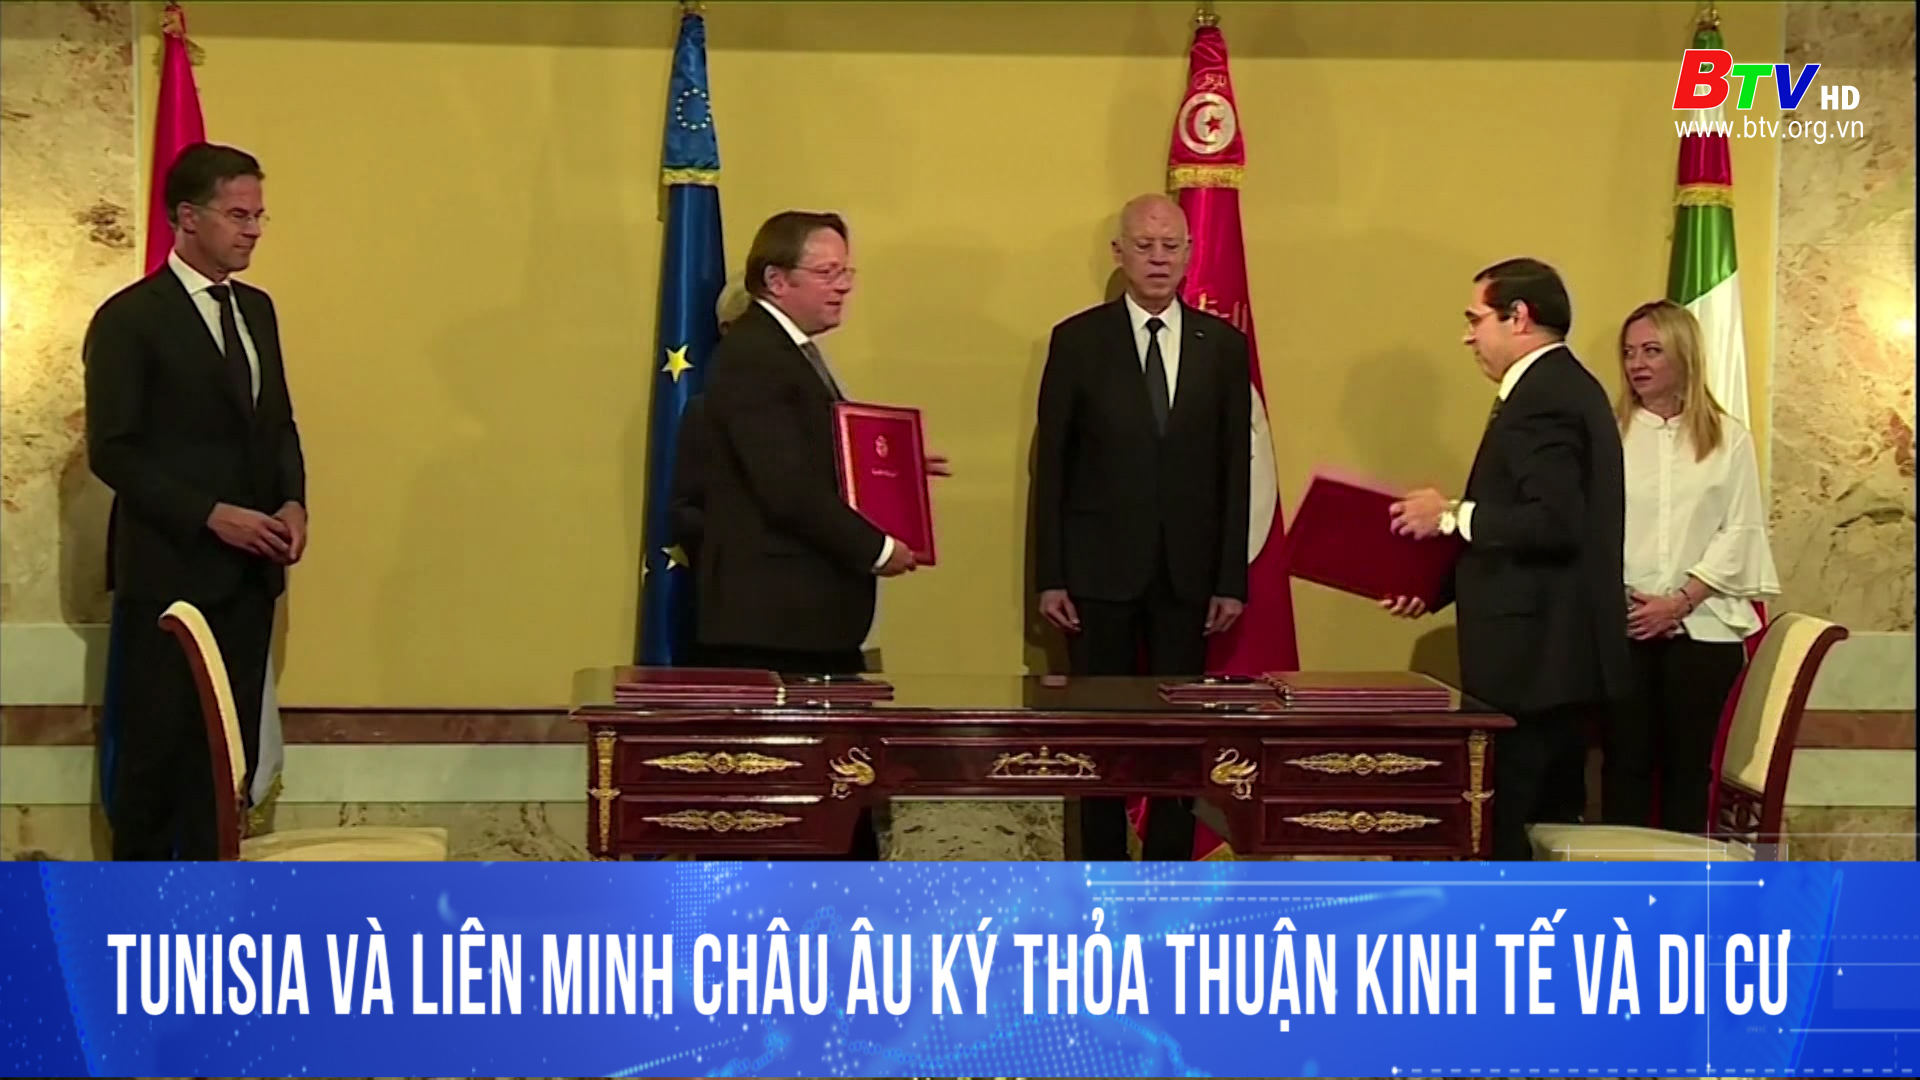 Tunisia và liên minh Châu Âu ký thỏa thuận kinh tế và di cư